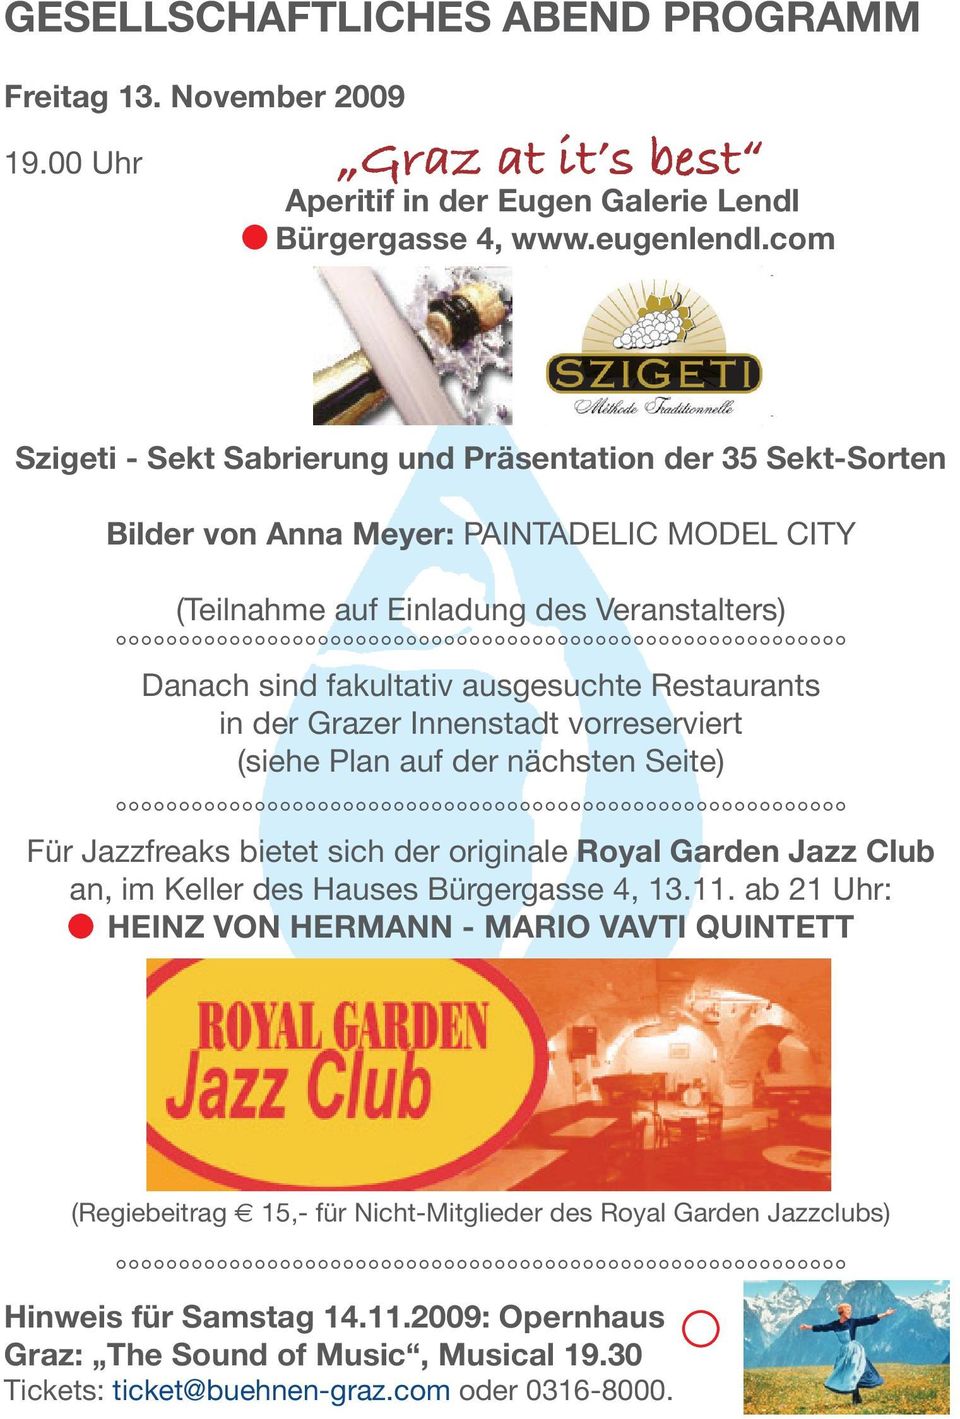 Restaurants in der Grazer Innenstadt vorreserviert (siehe Plan auf der nächsten Seite) Für Jazzfreaks bietet sich der originale Royal Garden Jazz Club an, im Keller des Hauses Bürgergasse 4, 13.11.